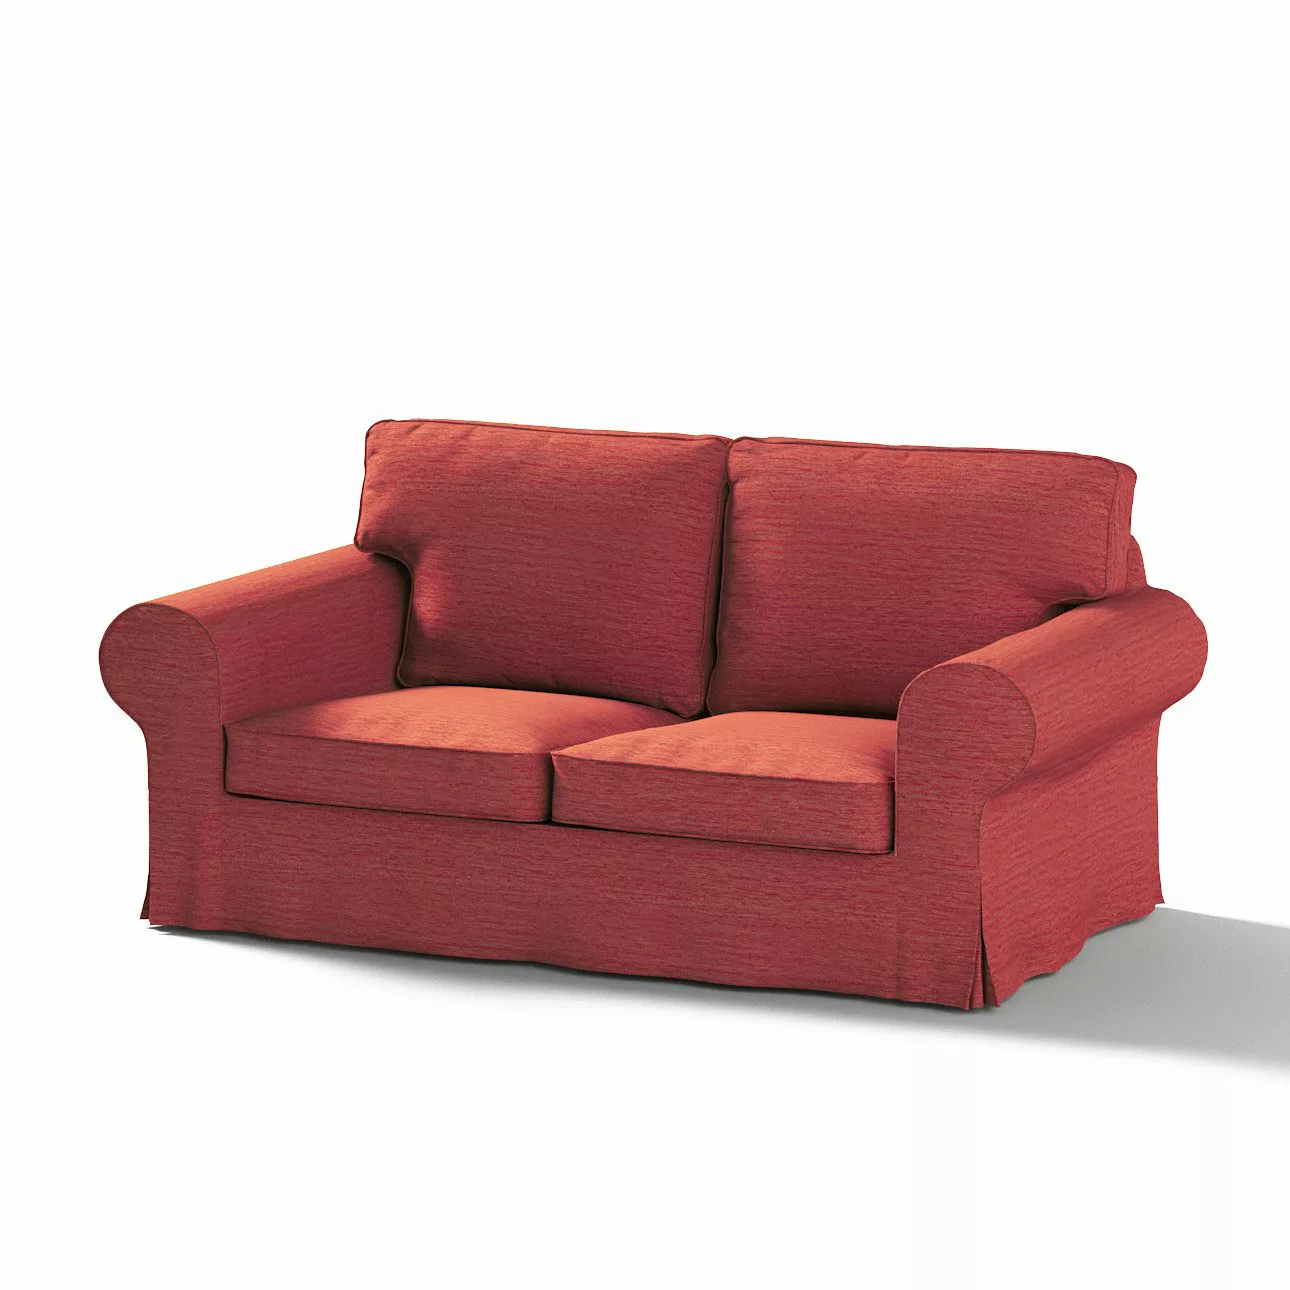 Bezug für Ektorp 2-Sitzer Sofa nicht ausklappbar, ziegelrot, Sofabezug für günstig online kaufen